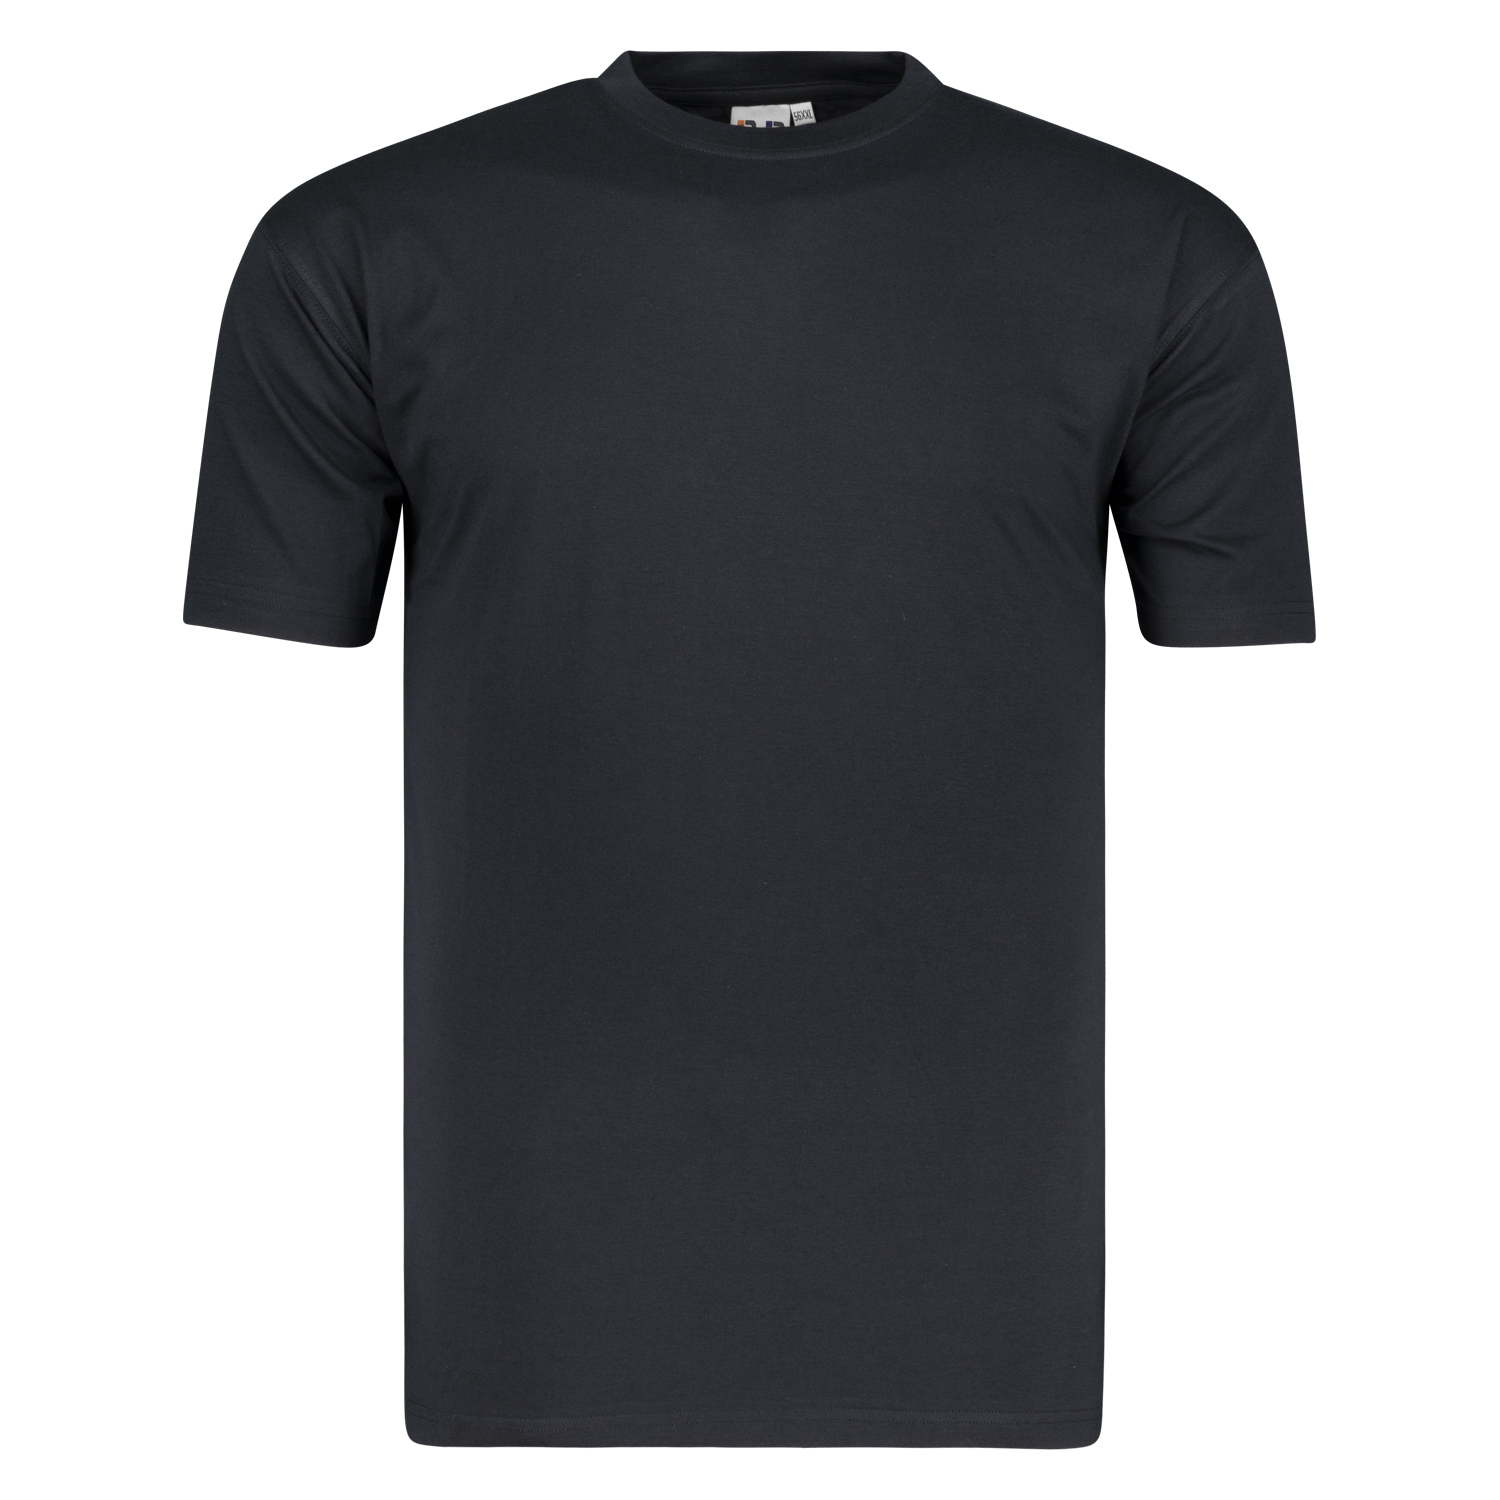 Schwarzes T-Shirt im Doppelpack in großen Größen bis 8XL von Big Basics
